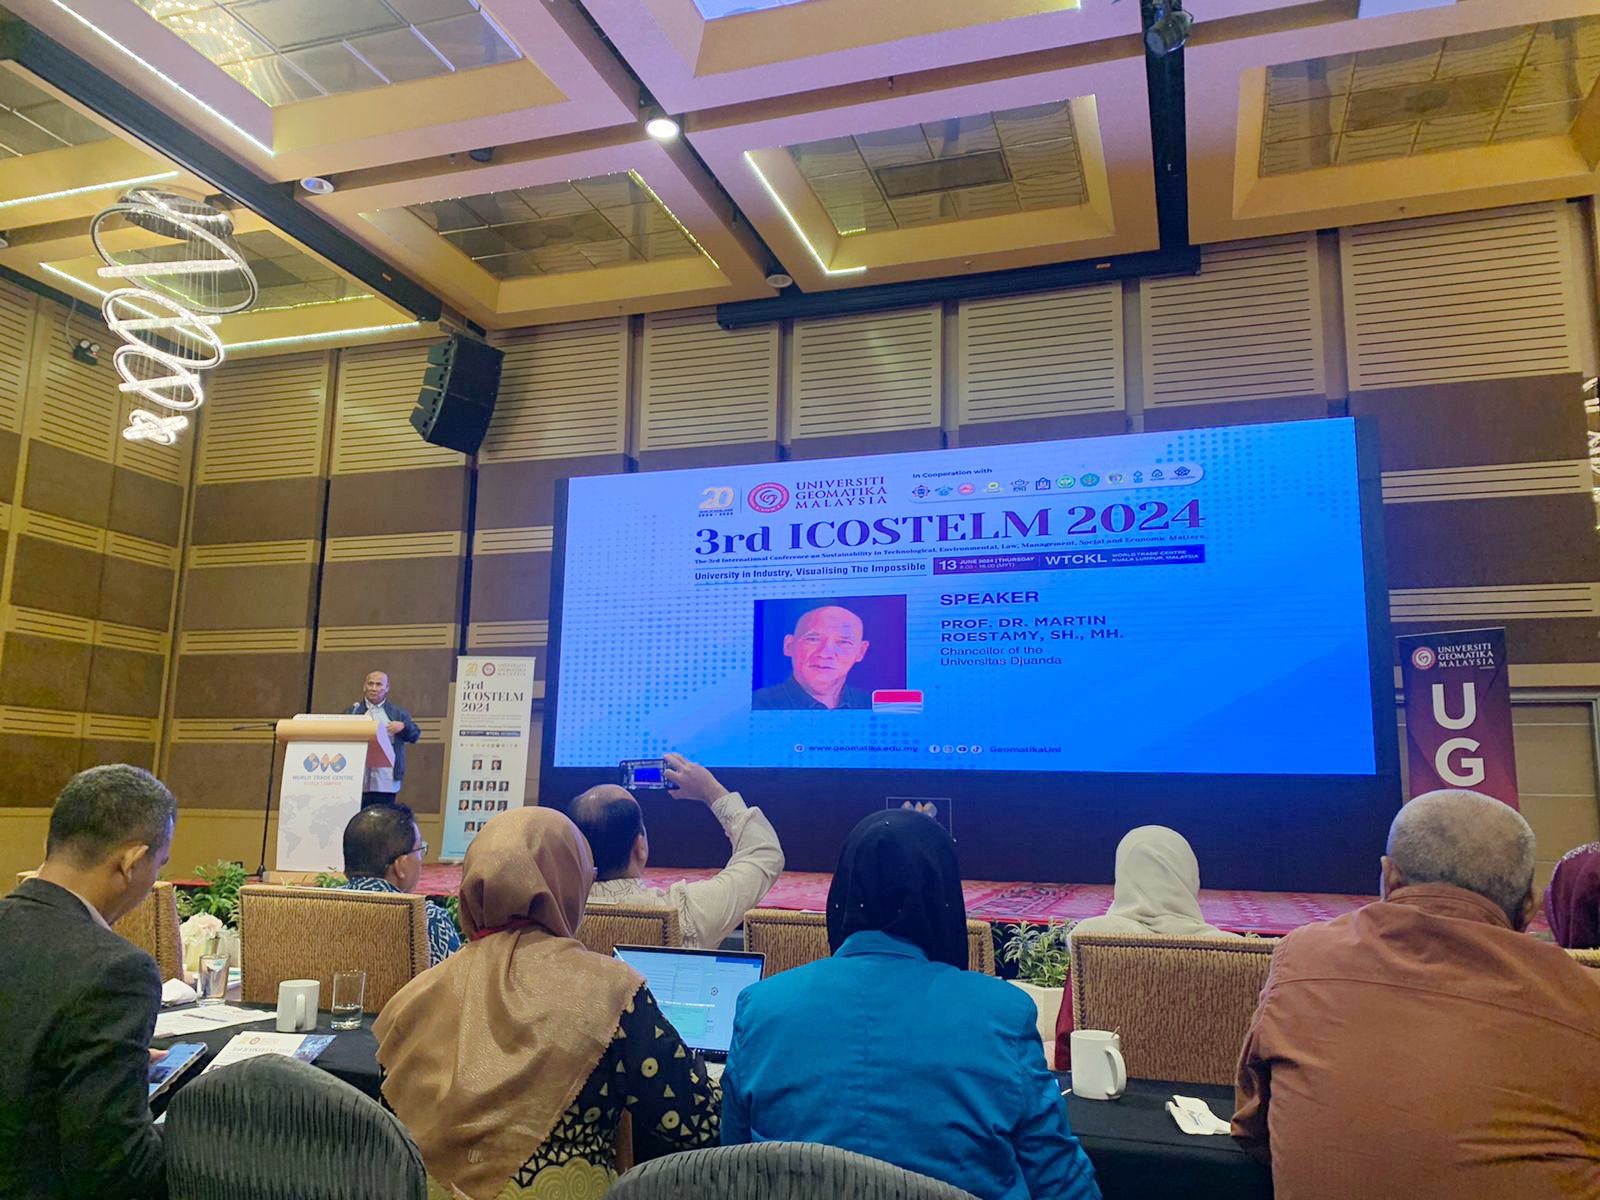 Chancellor UNIDA Jadi Narasumber dalam Konferensi Internasional 3rd ICOSTELM 2024 di Malaysia, Sampaikan Resolusi Konflik Tanah IKN yang Adil dan Bermartabat